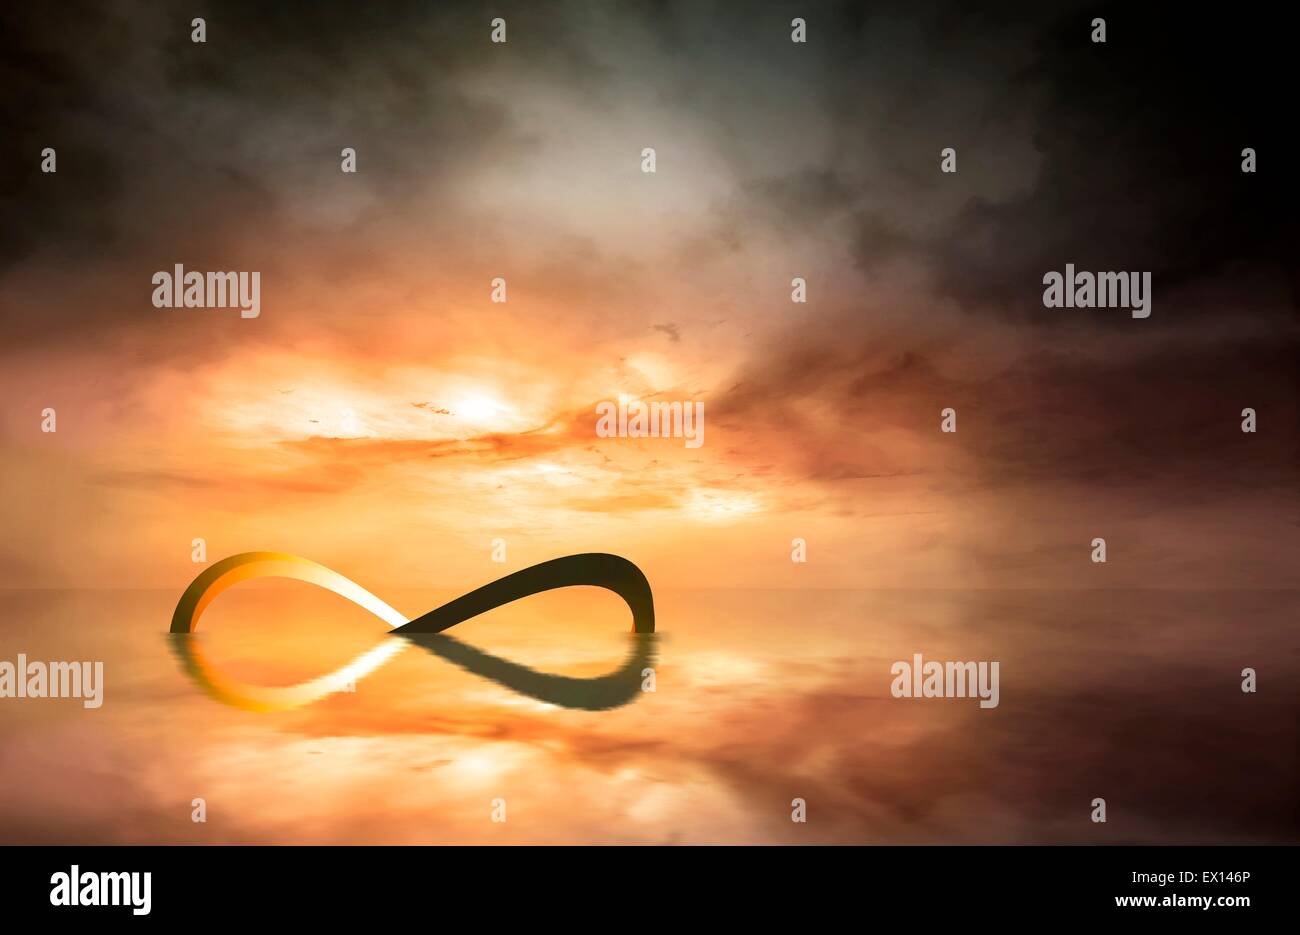 Boucle infini vu dans une mer infinie artwork Ce symbole représente le concept mathématique d'une infinie ou non bornés Banque D'Images